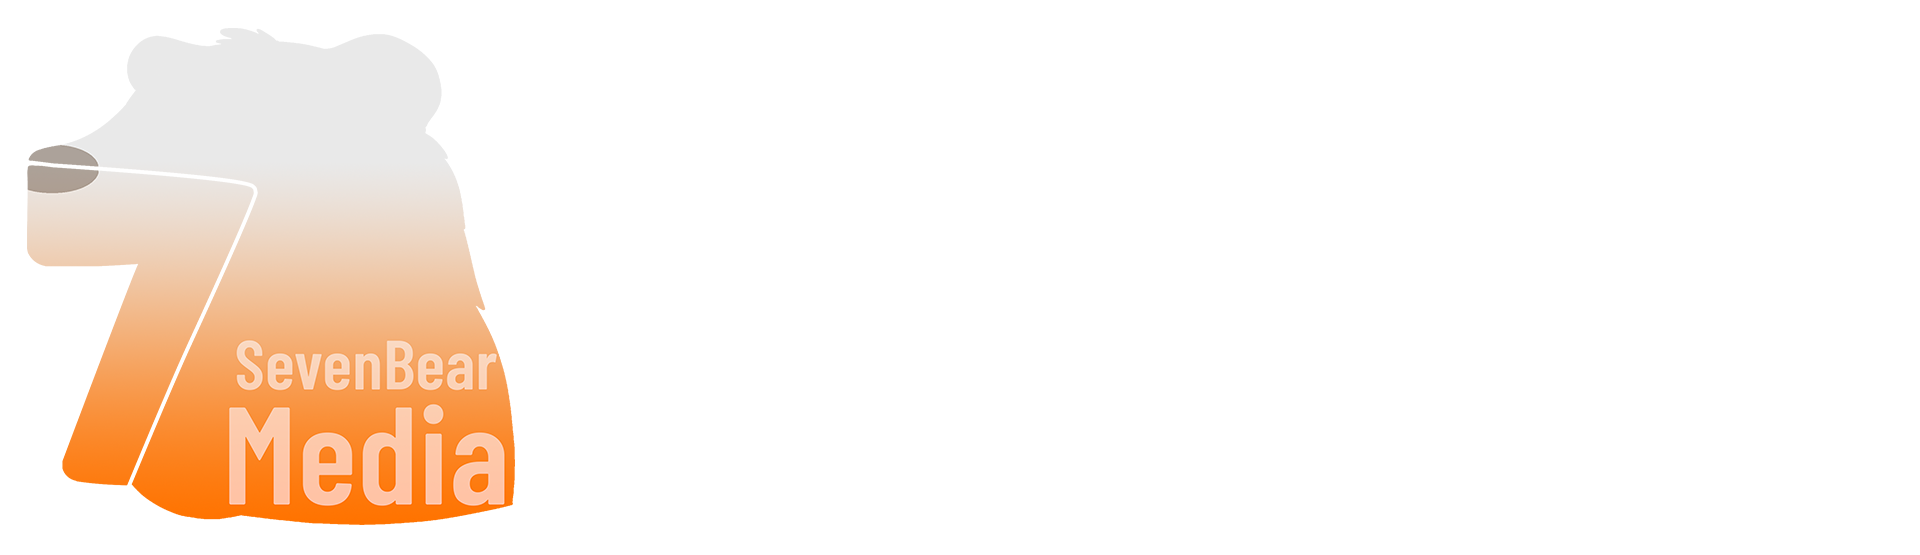 SevenBear Media